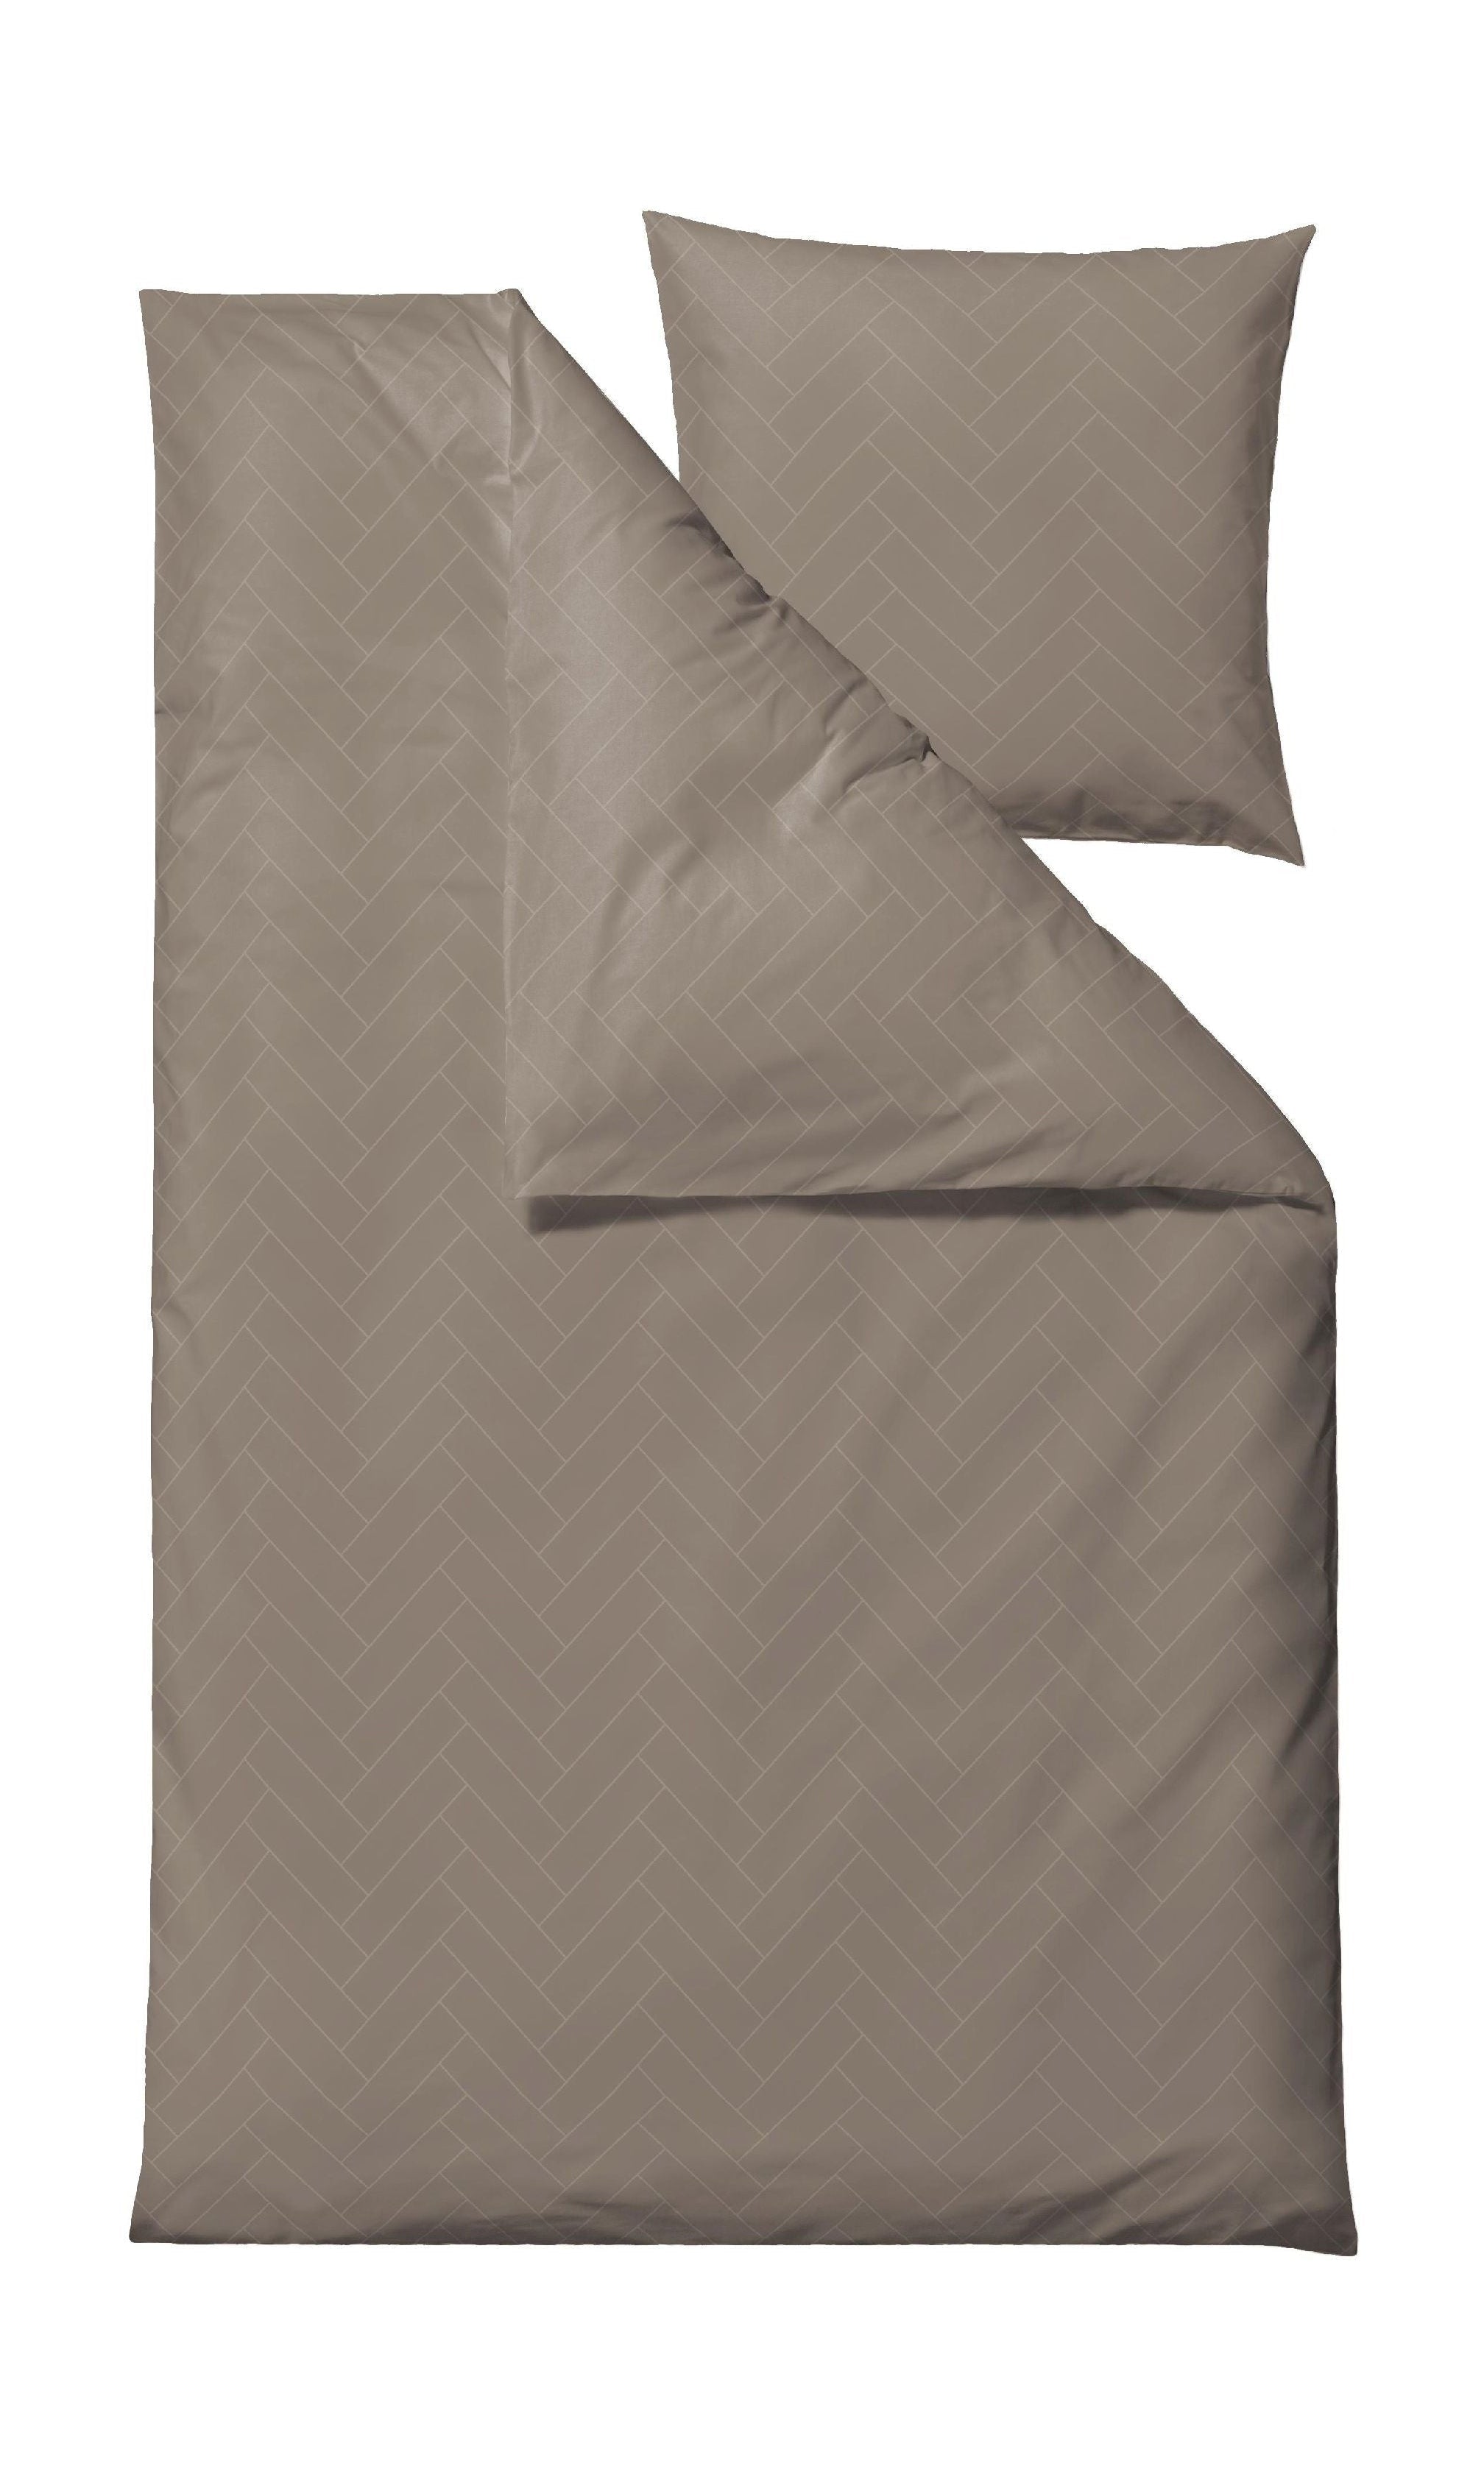 Söstahl brickor sängkläder 140x220 cm, taupe